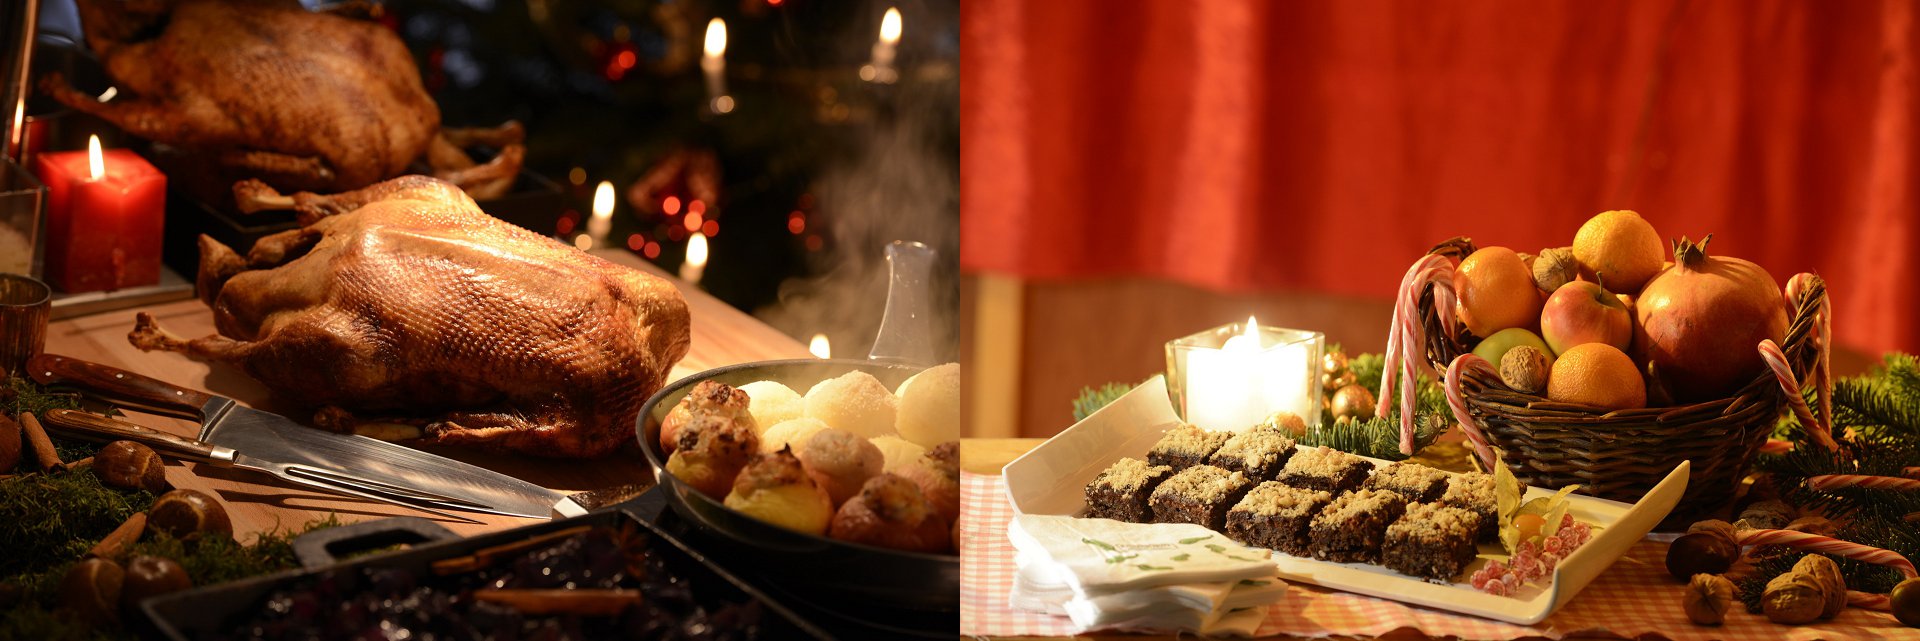 Weihnachts-Catering Köln Gans